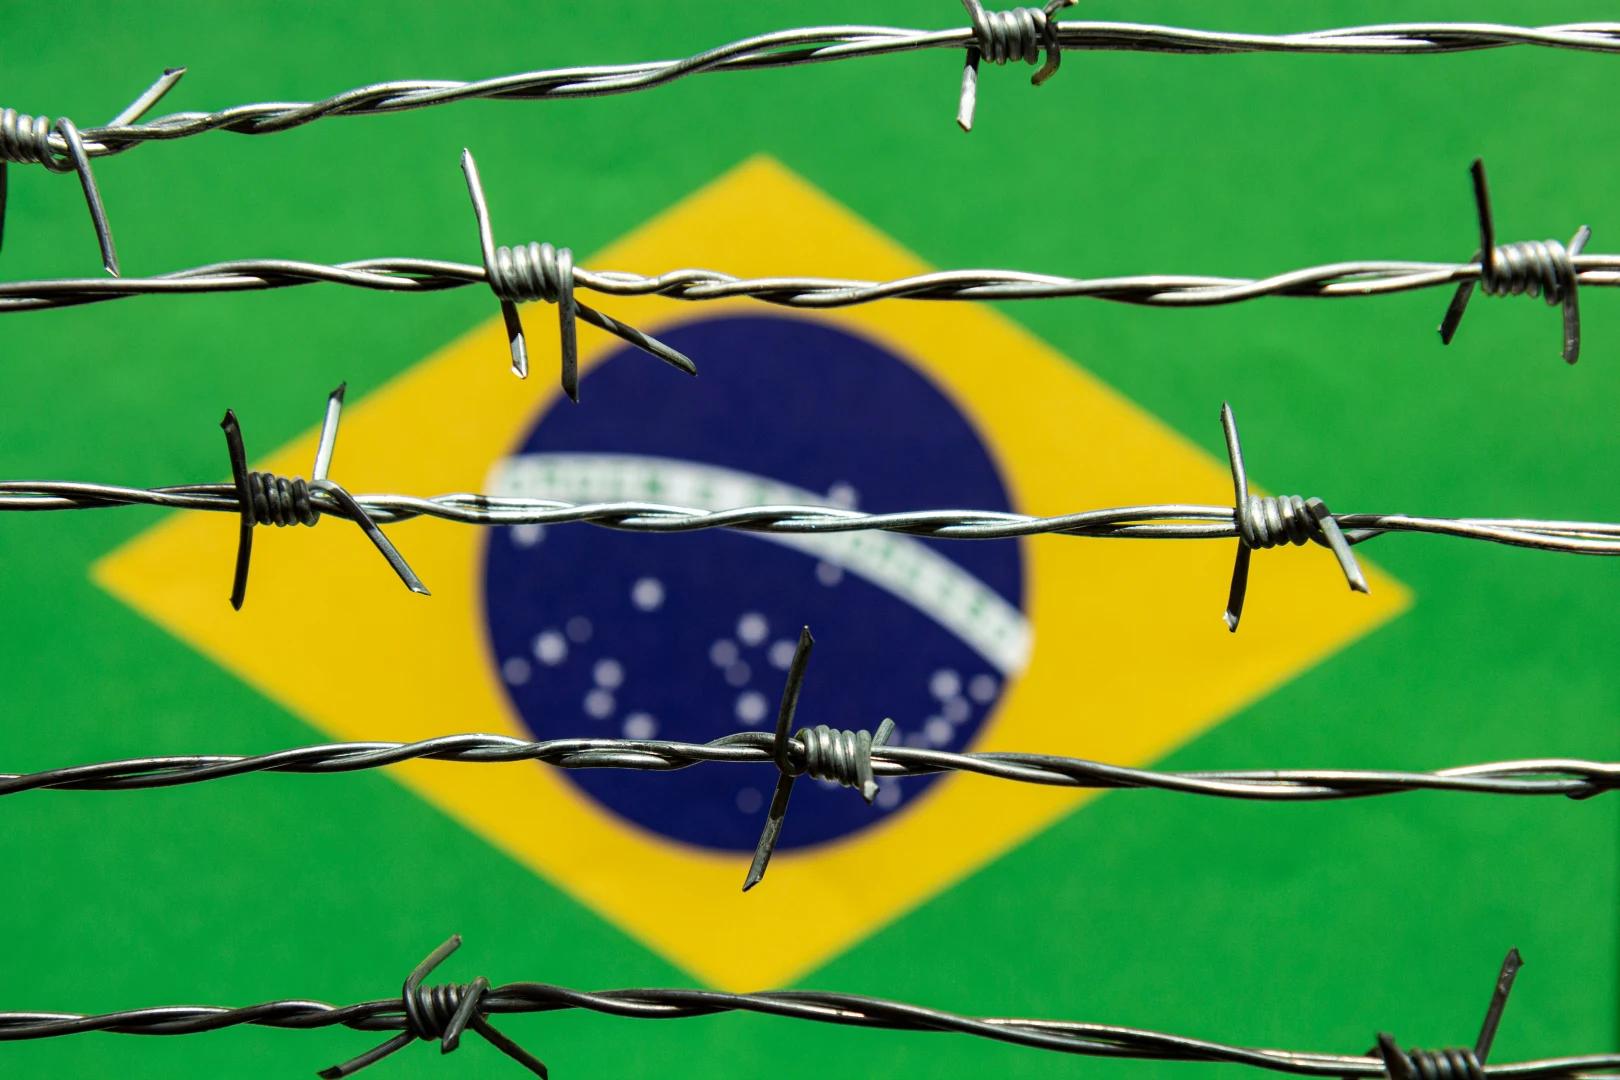 Economista brasileño enfrenta cargos por cuestionar resultados electorales